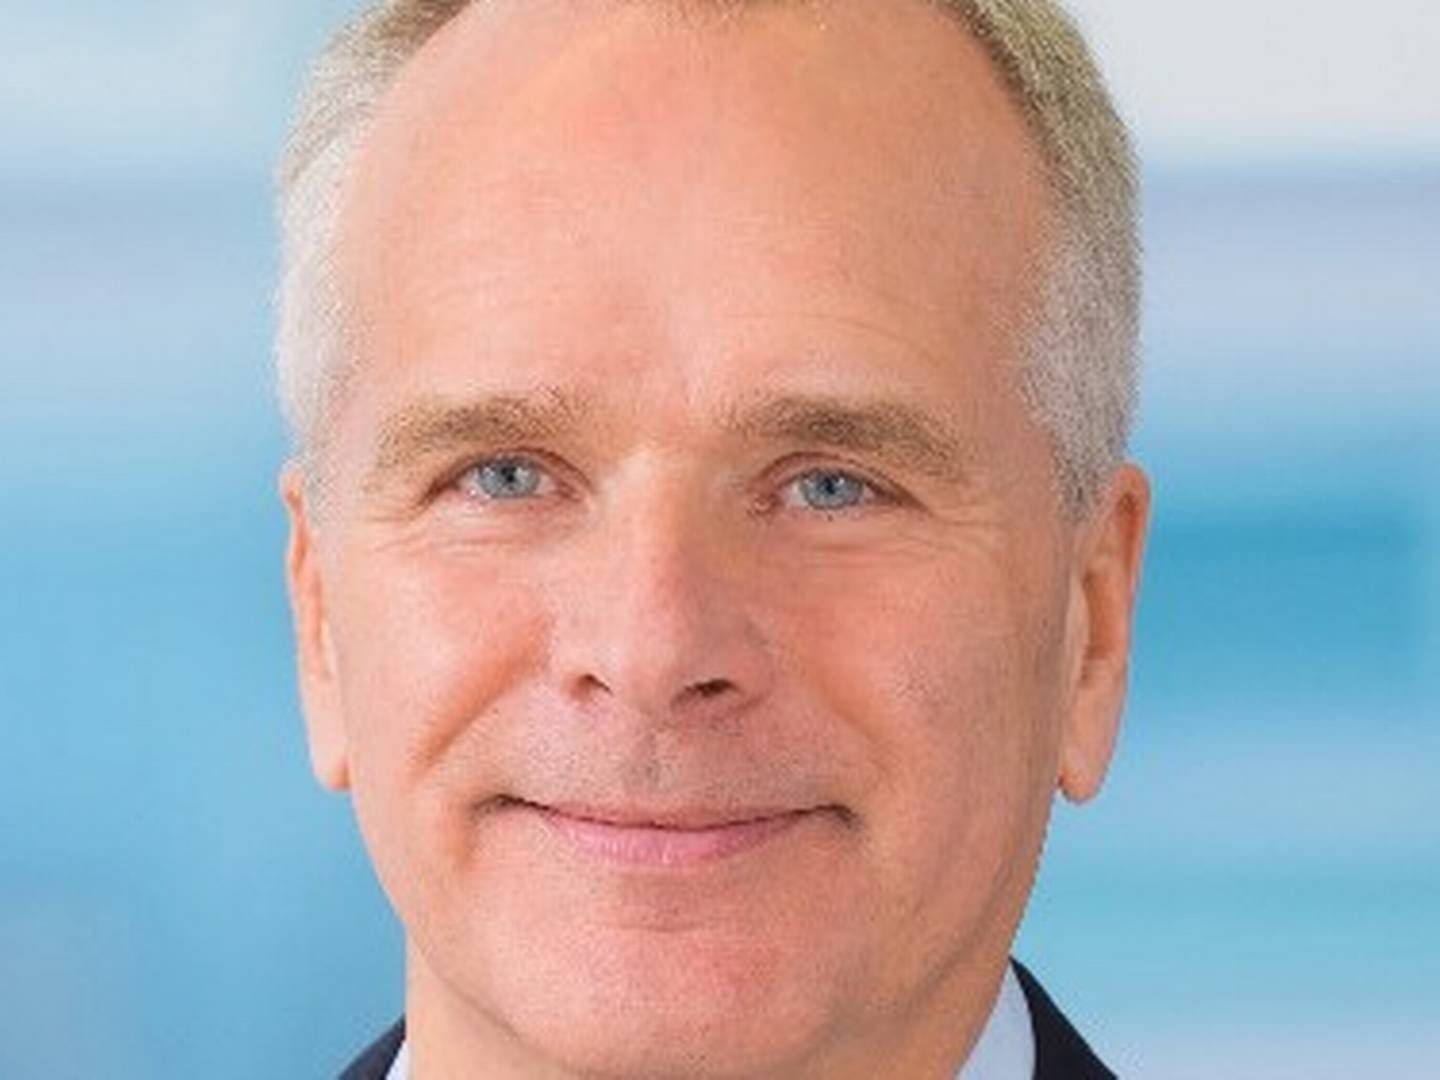 KONKURS: Bernt B. Rasmussen er administrerende direktør i Bertoni, som er erklært konkurs i Danmark.